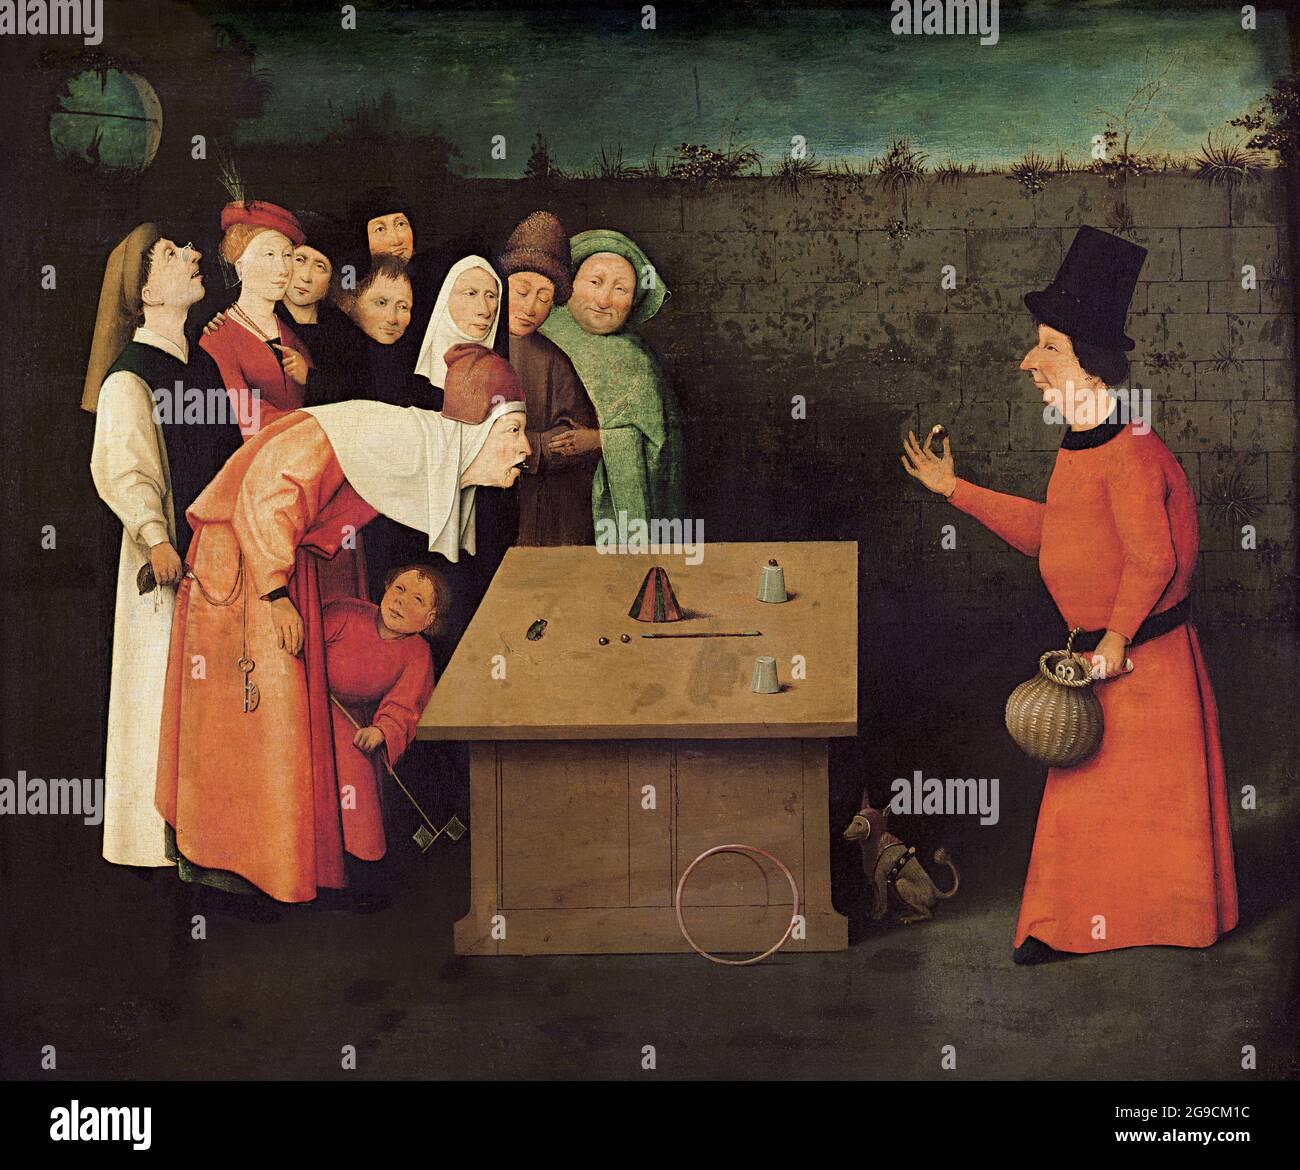 Titre: Le Conjurer Créateur: Hieronymus Bosch Date: 1501 - 1505 Moyen: Huile sur bois Dimensions: 53 × 65 cm emplacement: St-Germain-en-Laye, Musée Municipal. Banque D'Images